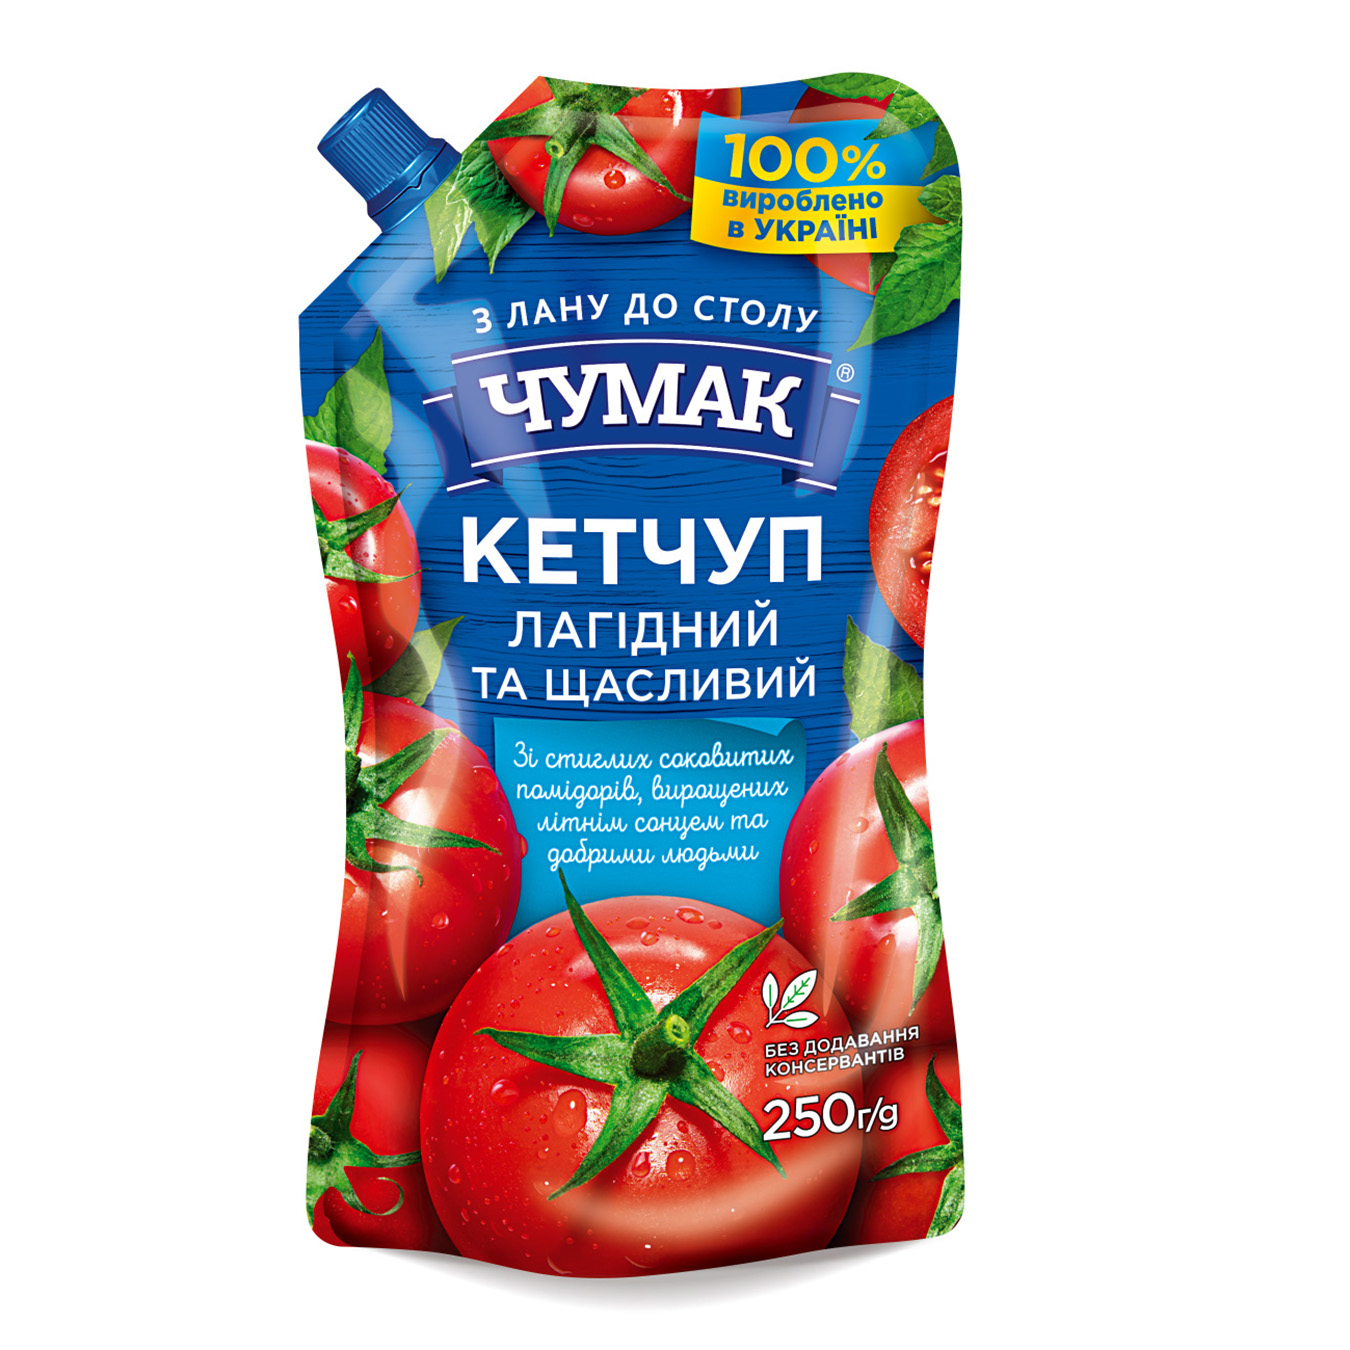 Chumak Delicate Ketchup 250g